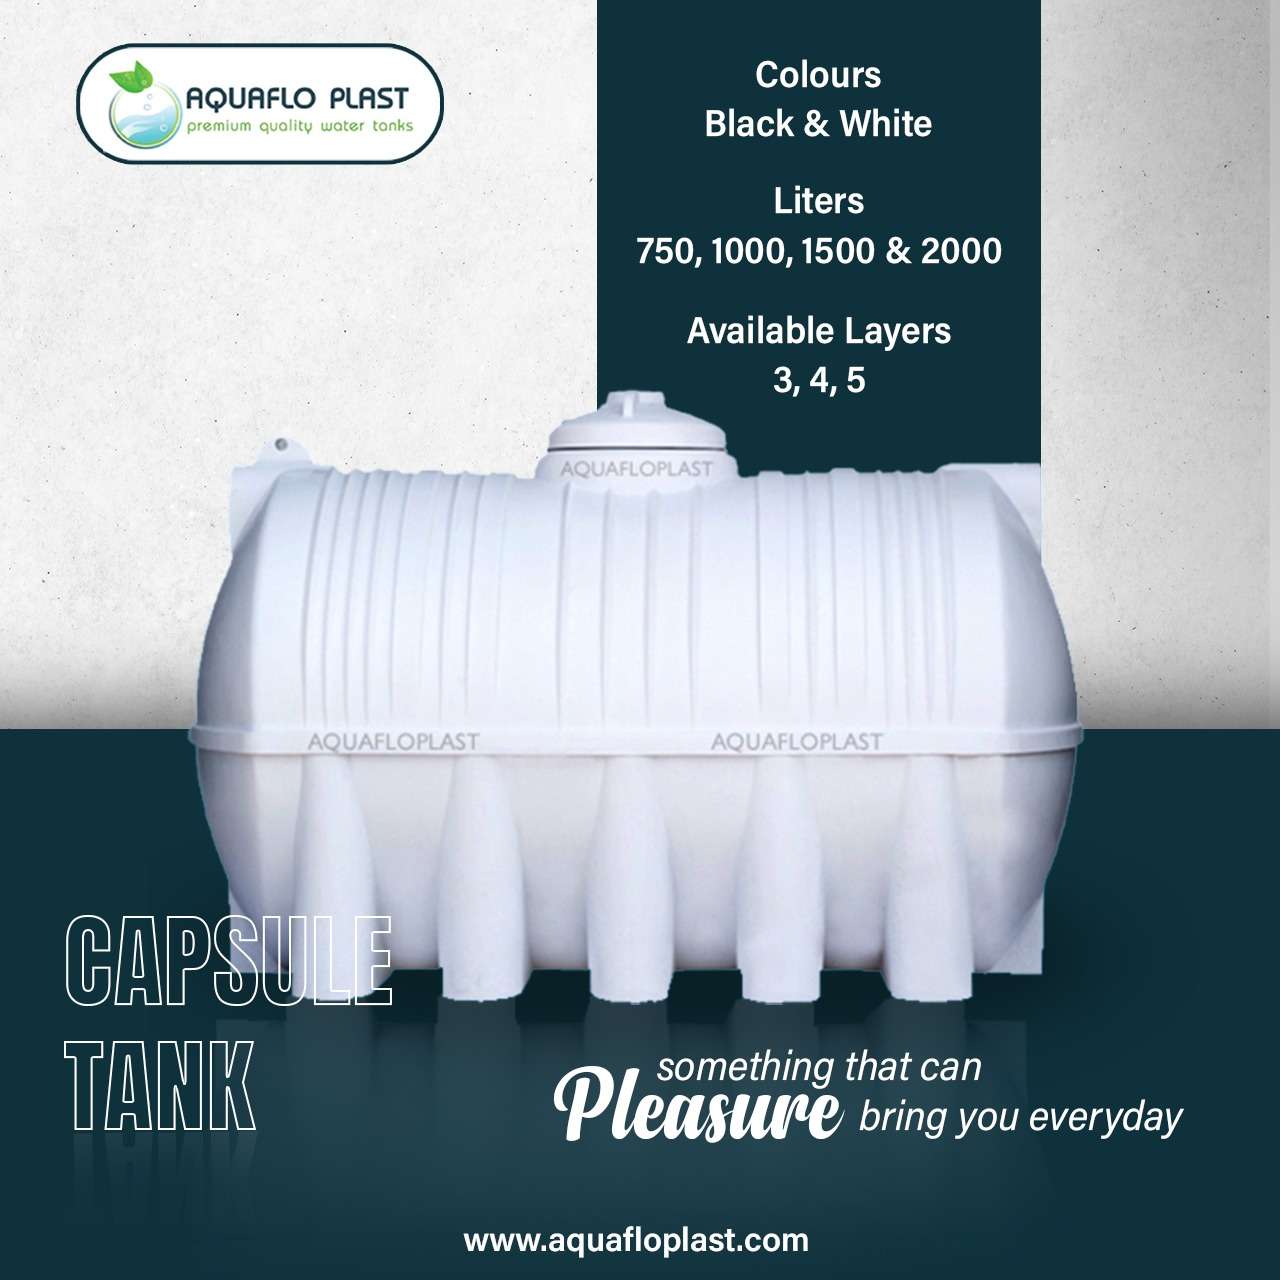 Water Tank- Aqua Plast Premium Quality Water Tanks